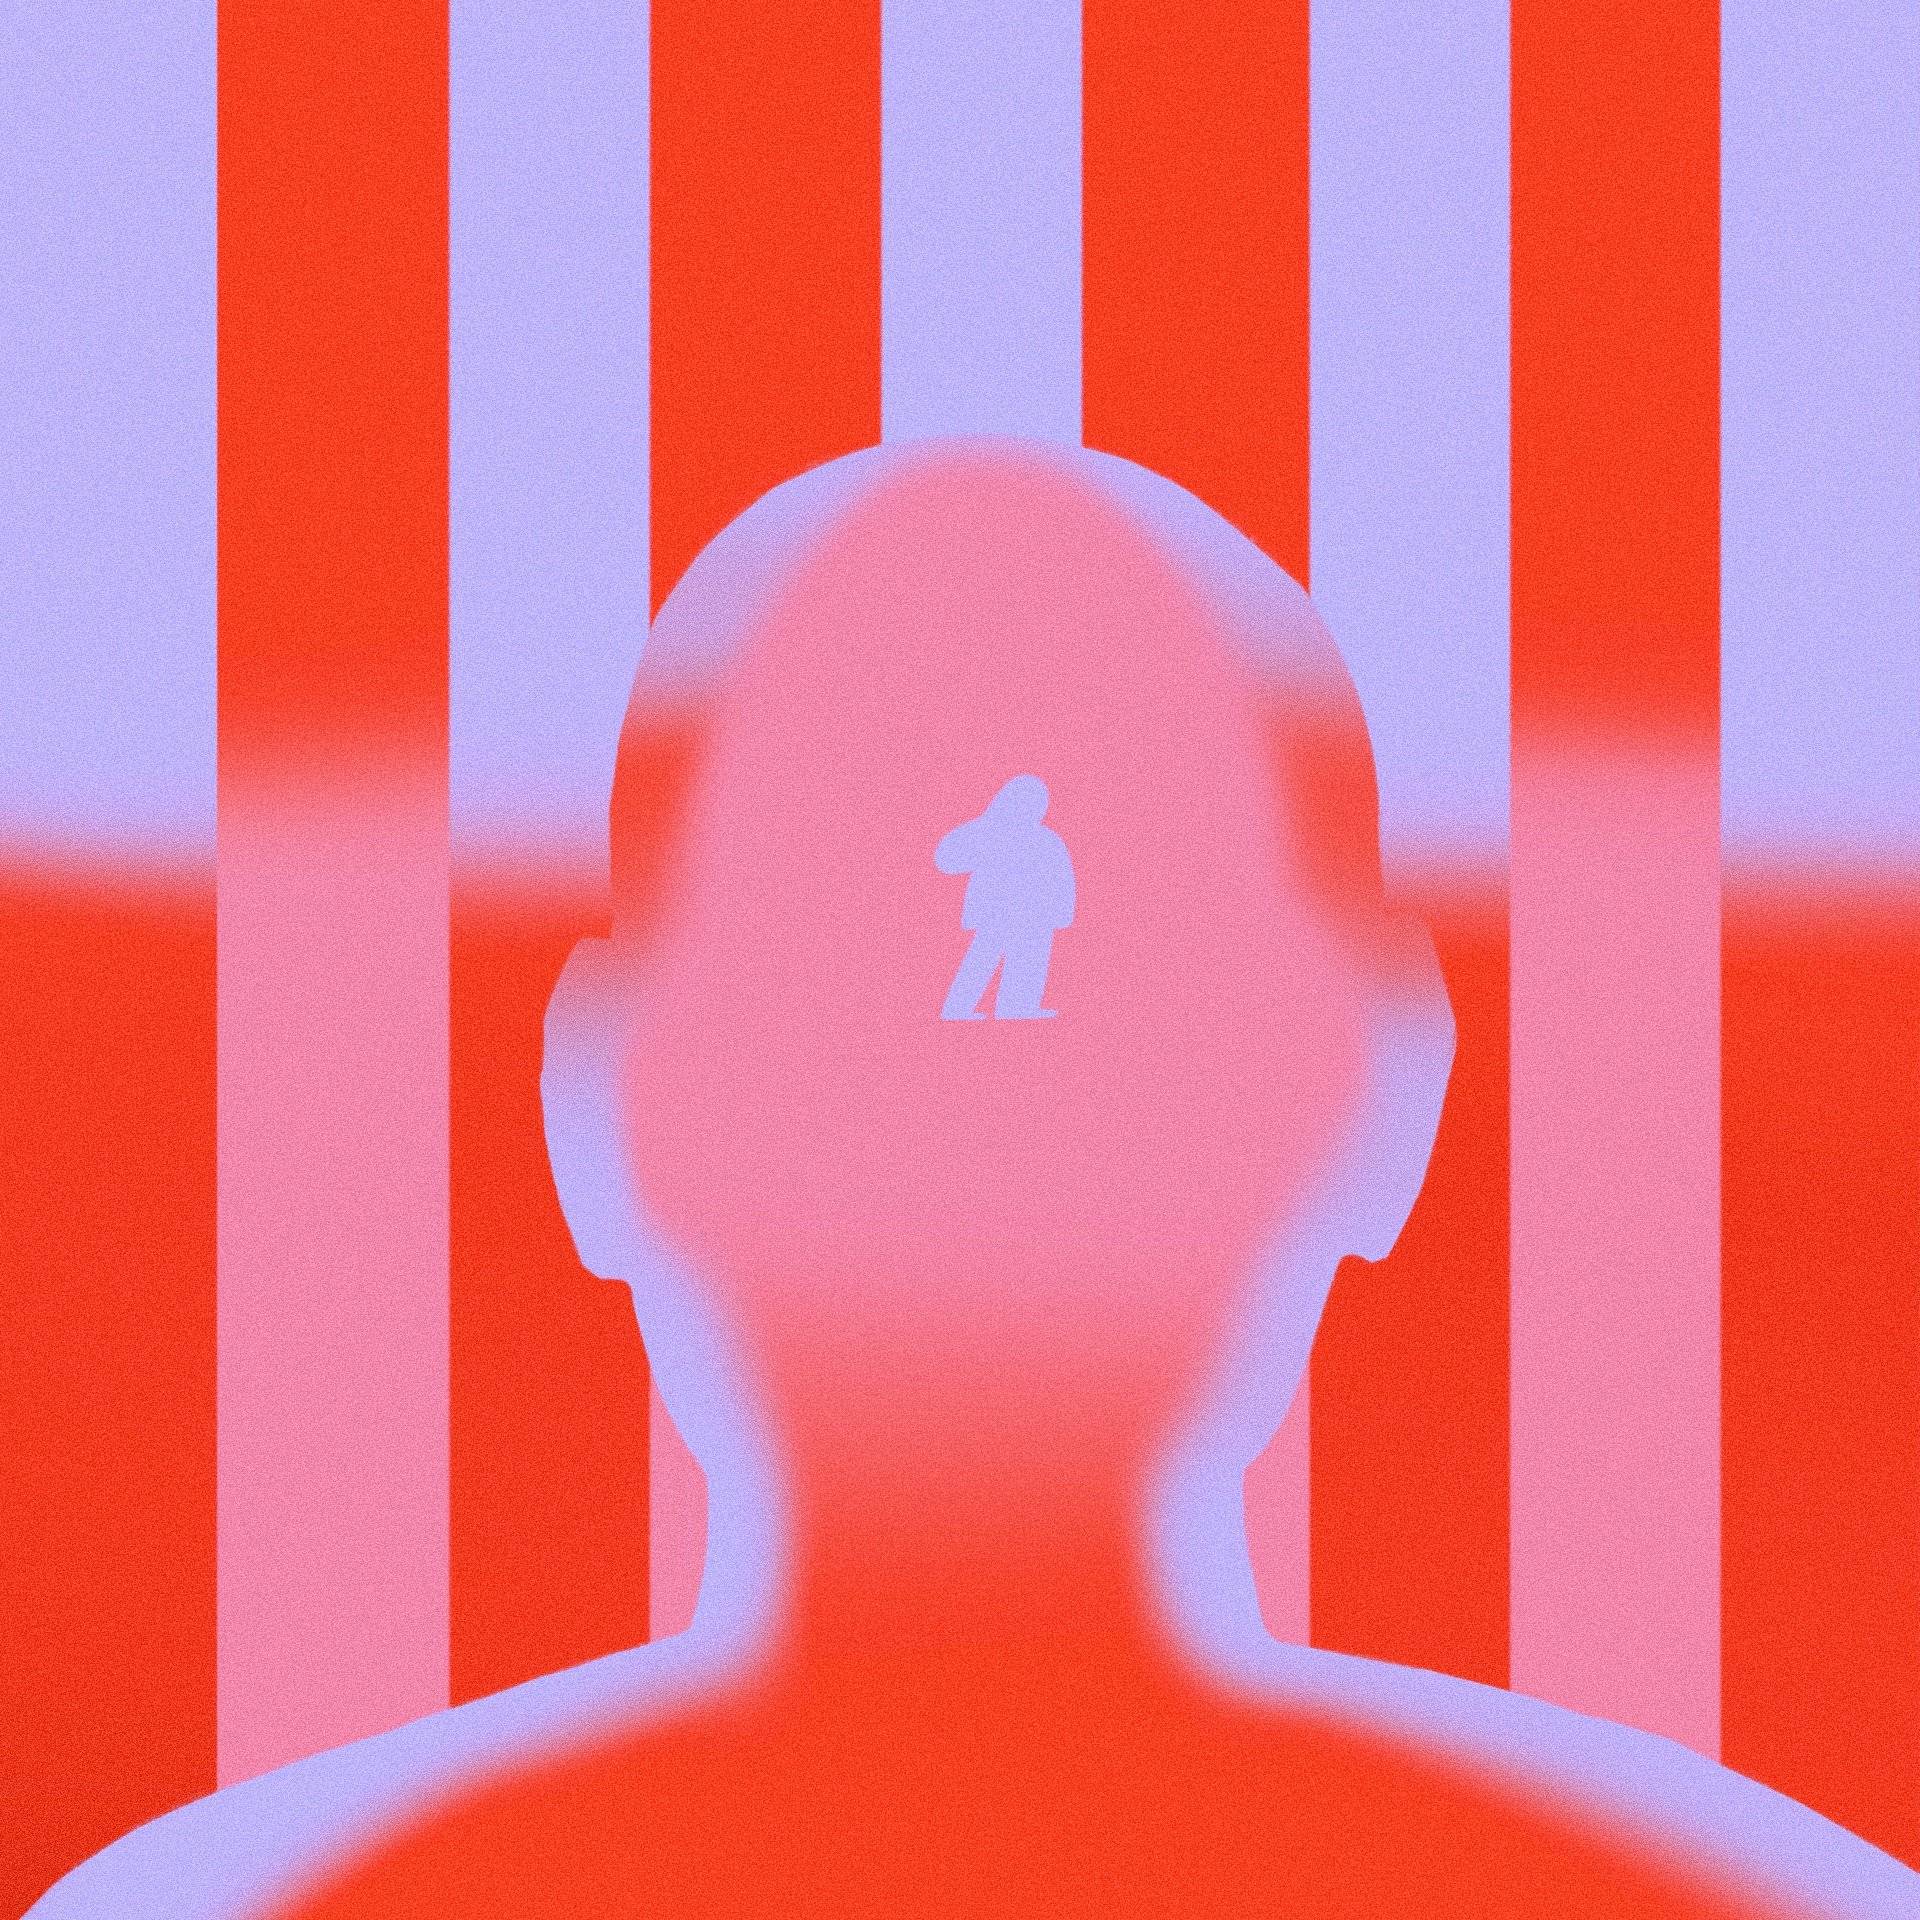 Grafika przedstawiająca zarys głowy człowieka na tle czerwonych krat, w głowie widać sylwetkę ludzką. Osoba transseksualna